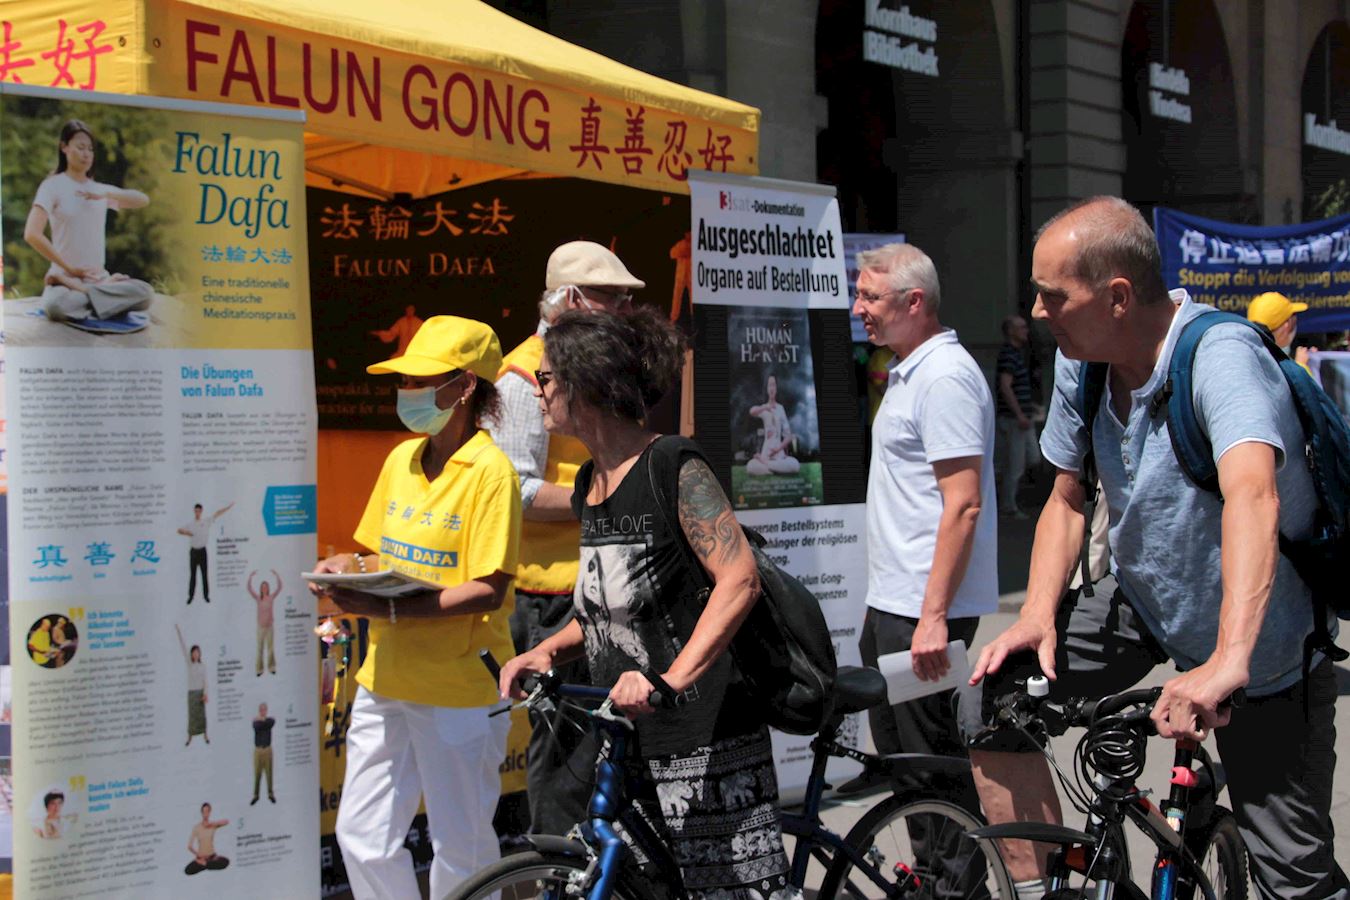 Image for article Les efforts pour mettre fin aux 21 ans de persécution du Falun Gong en Chine obtiennent le soutien du public à Berne